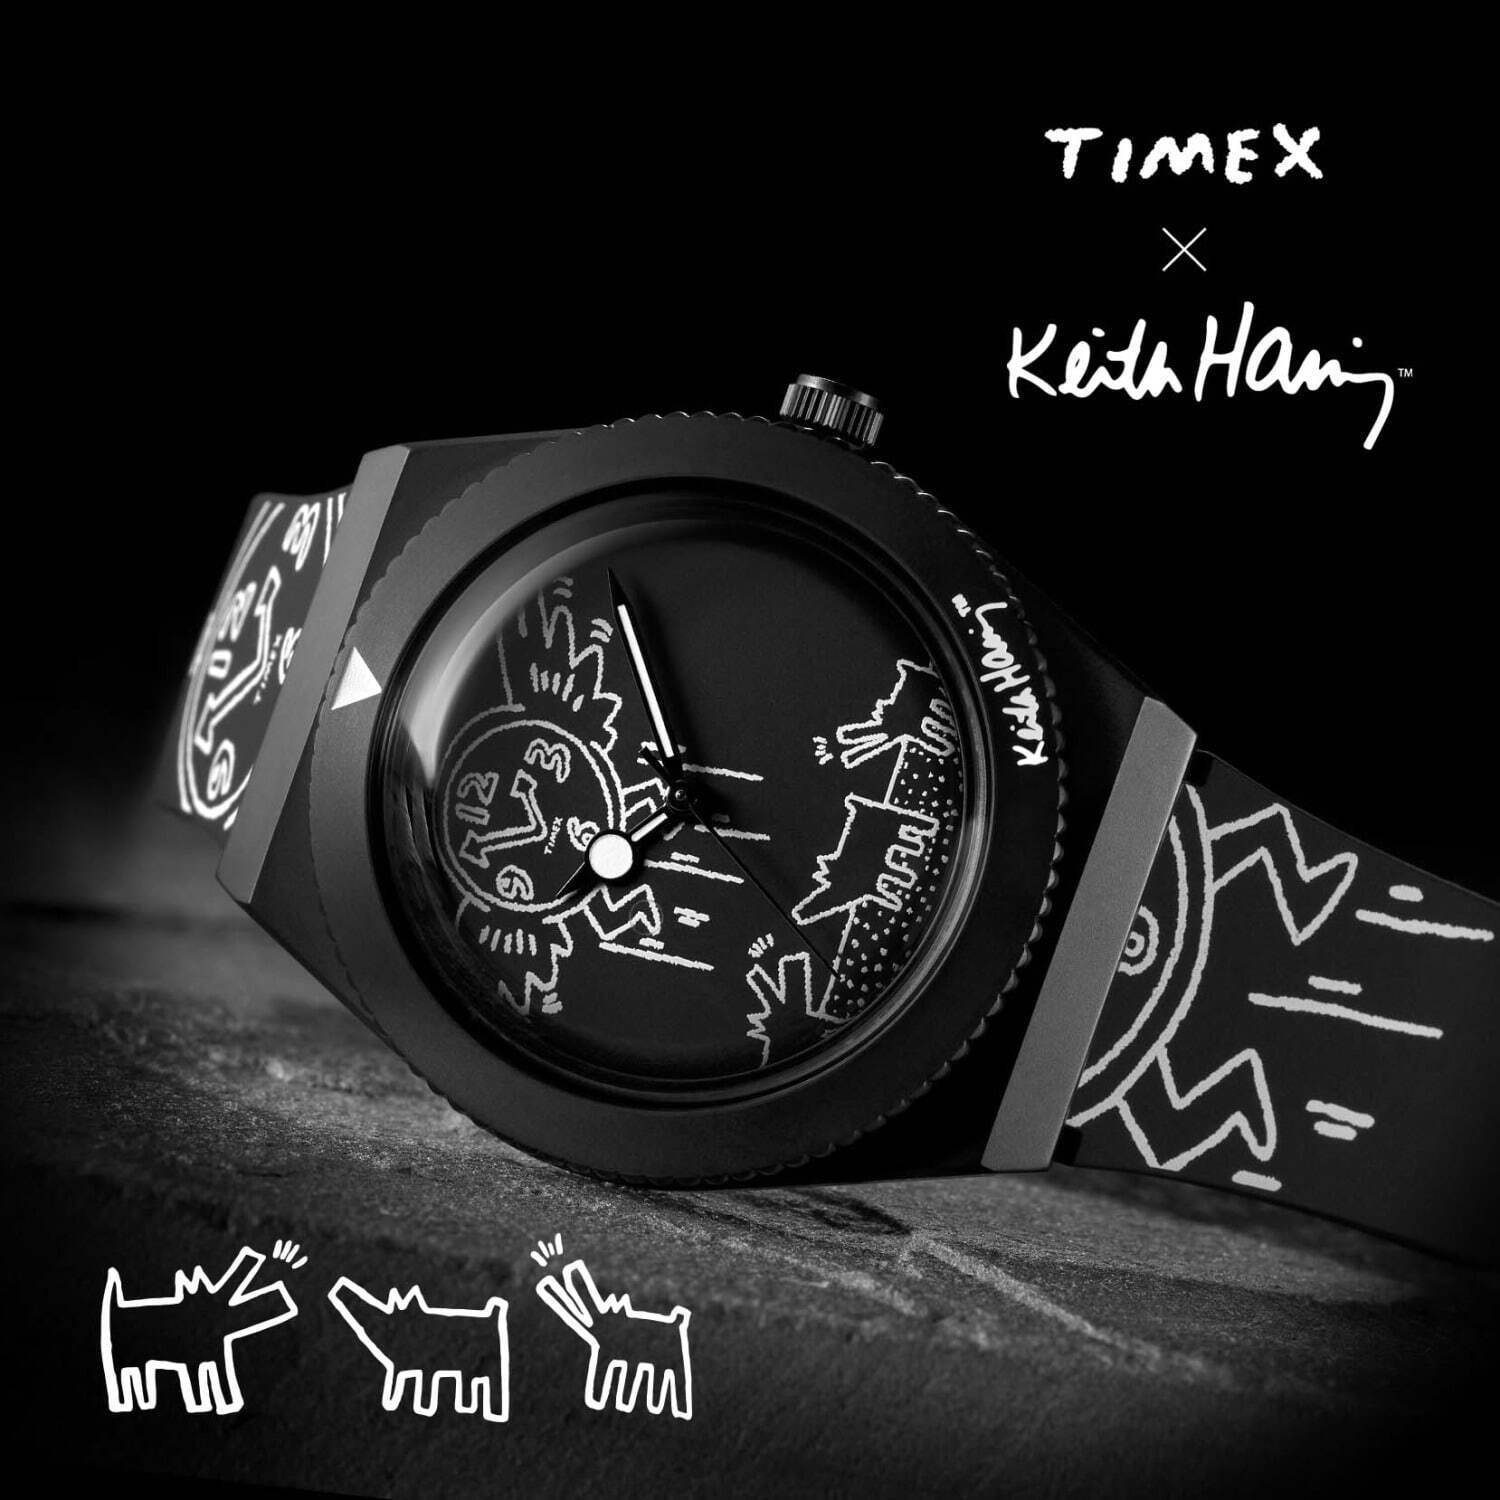 タイメックス×キース・ヘリングのコラボ腕時計、時計全体にアートを 